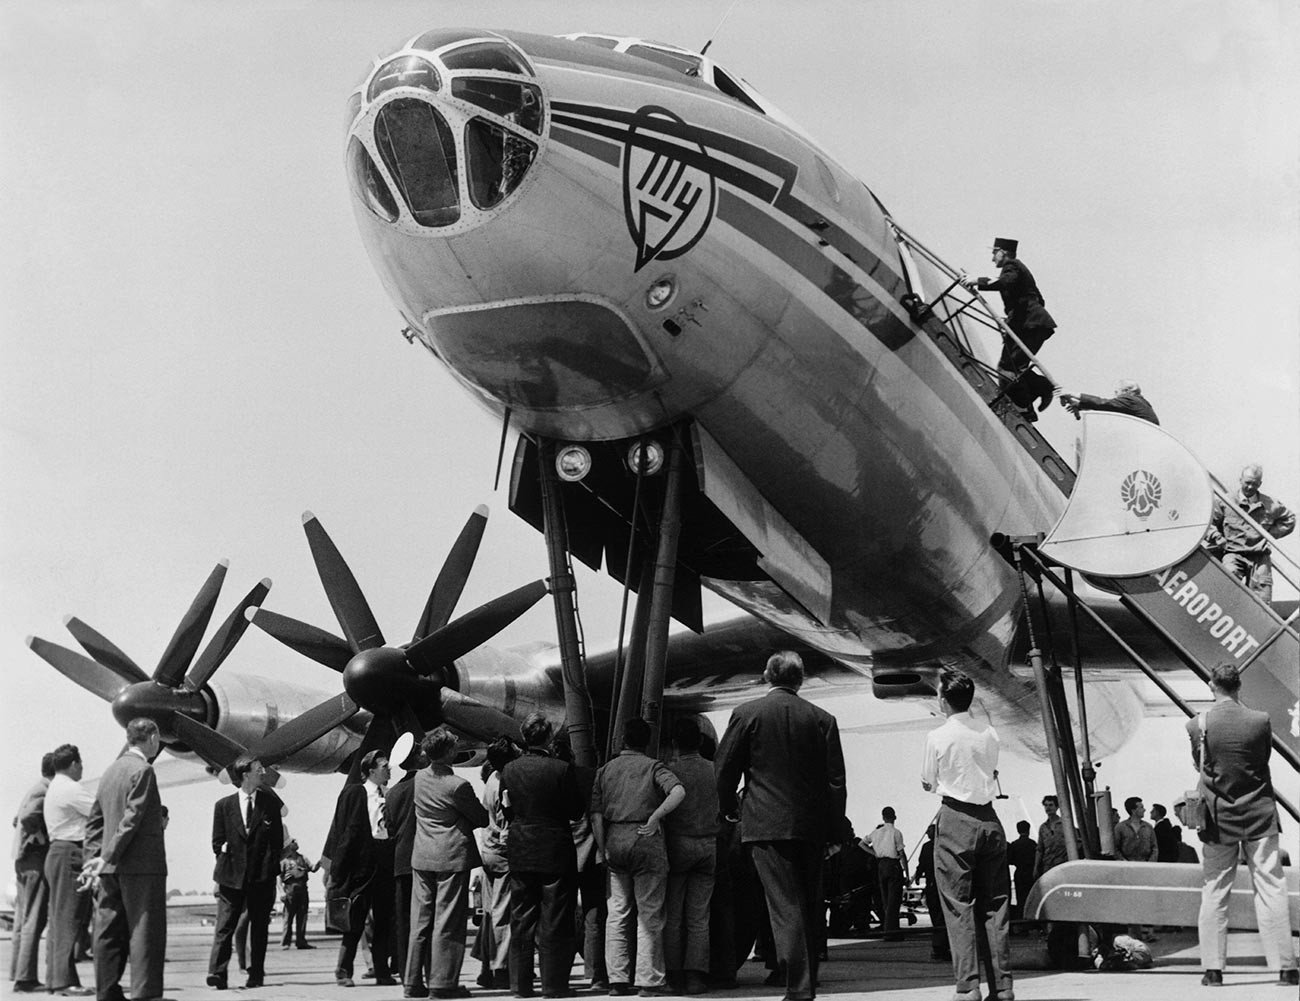 Ту-114, совјетски путнички авион на турбоелисни погон фотографисан на писти у Буржеу. Овај авион чији је конструктор Андреј Тупољев могао је да прими од 170 до 225 путника, а његове аеродинамичке особине омогућавале су му брзину од 800-850 км/час и висину од 10.000-12.000 метара.